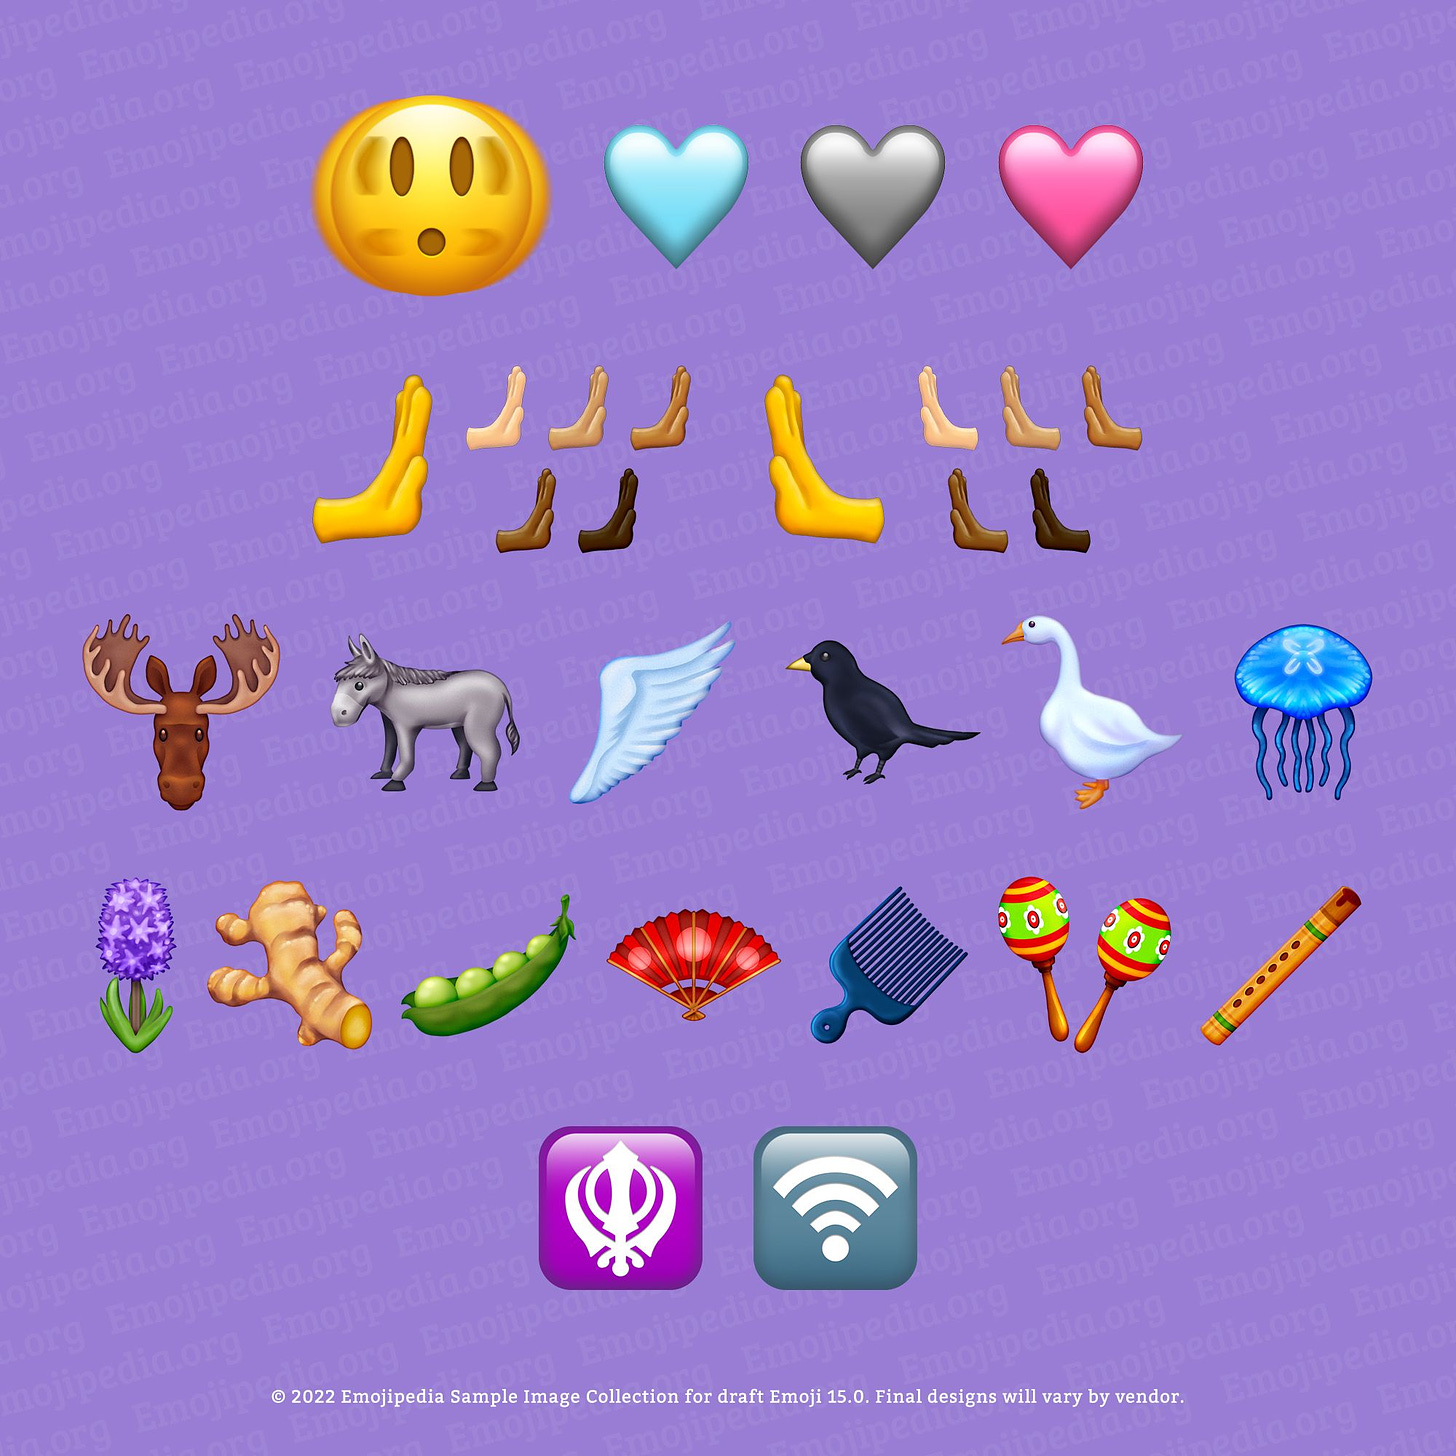 Zu sehen ist eine Auswahl neuer Emojis auf einem lila Hintergrund mit blasser "Emojipedia" Beschriftung